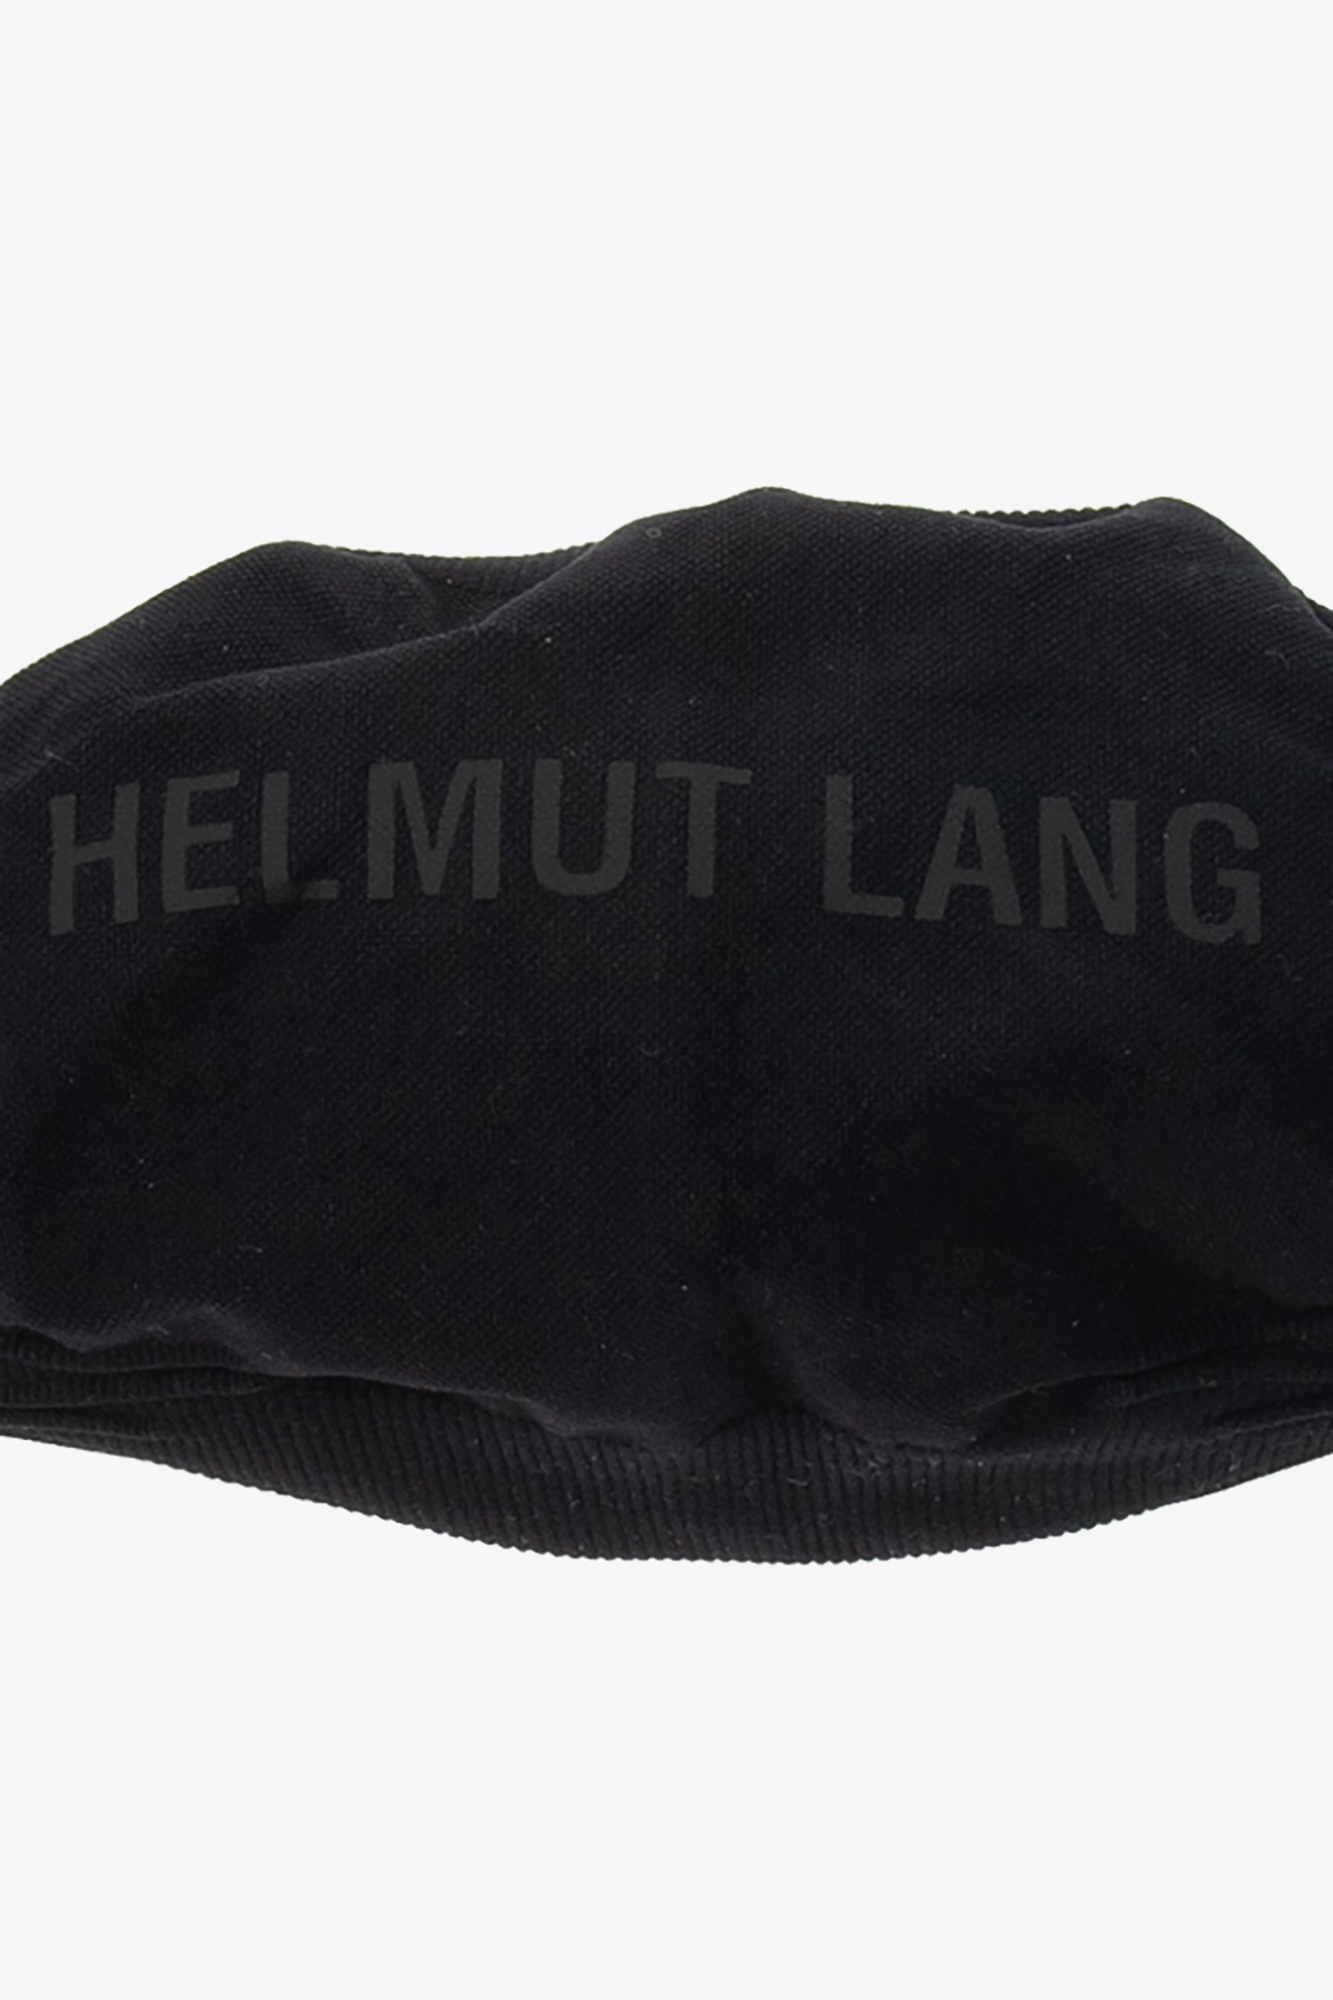 Helmut Lang Galaxy barn återanvändbar mask